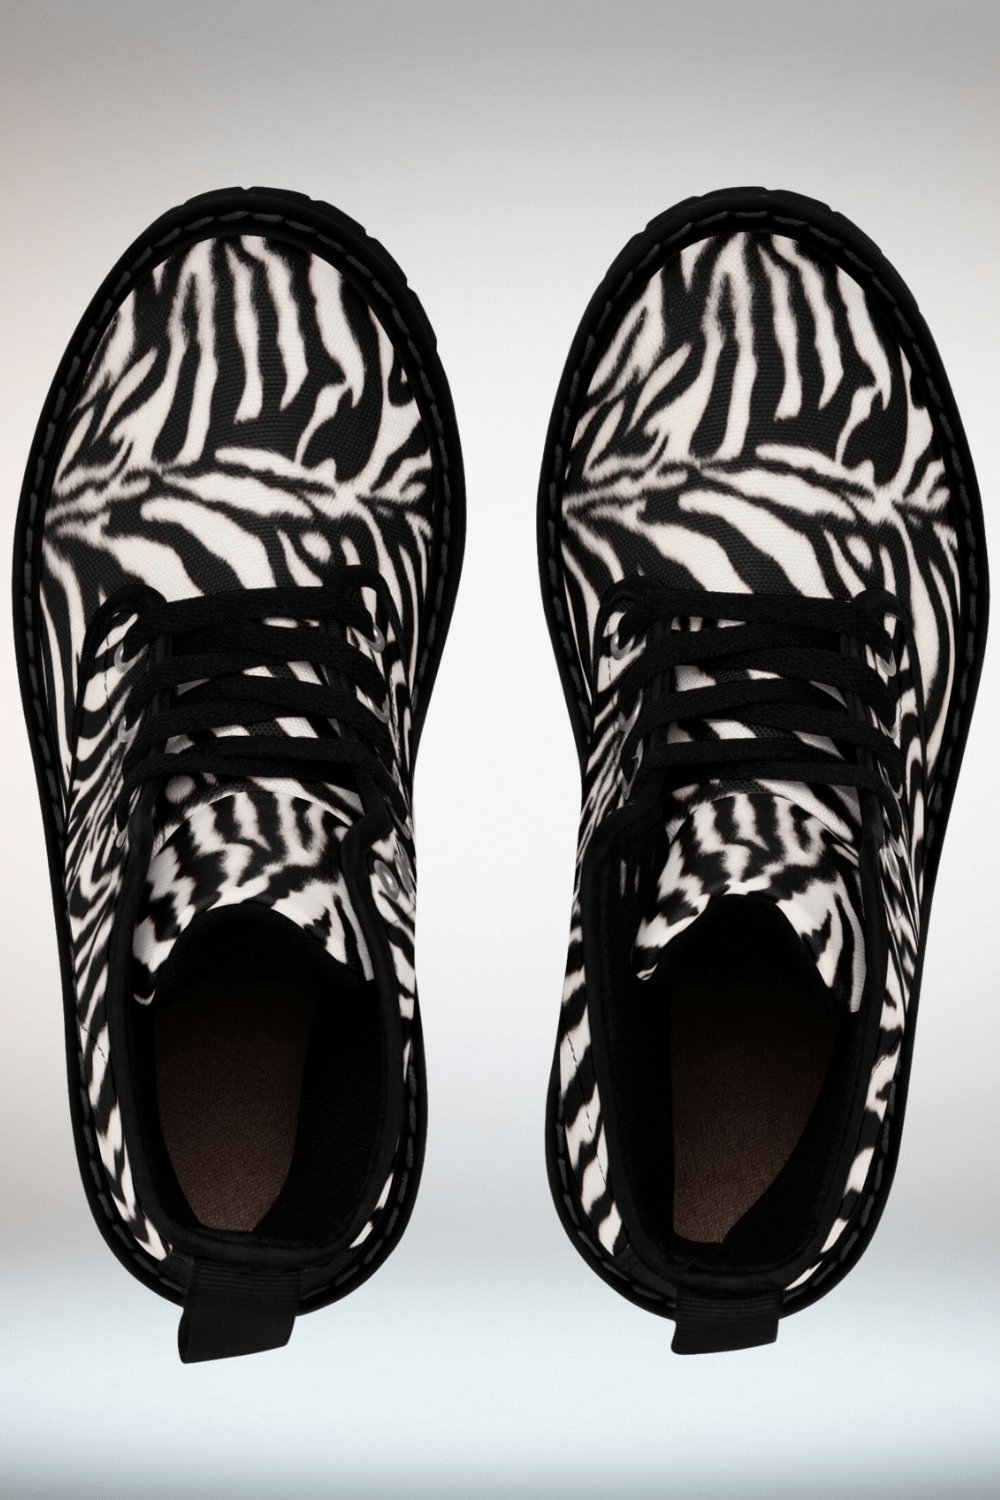 Zebra Print Lace Up Ankle Boots - Black Sole - TGC Boutique - Ankle Boots